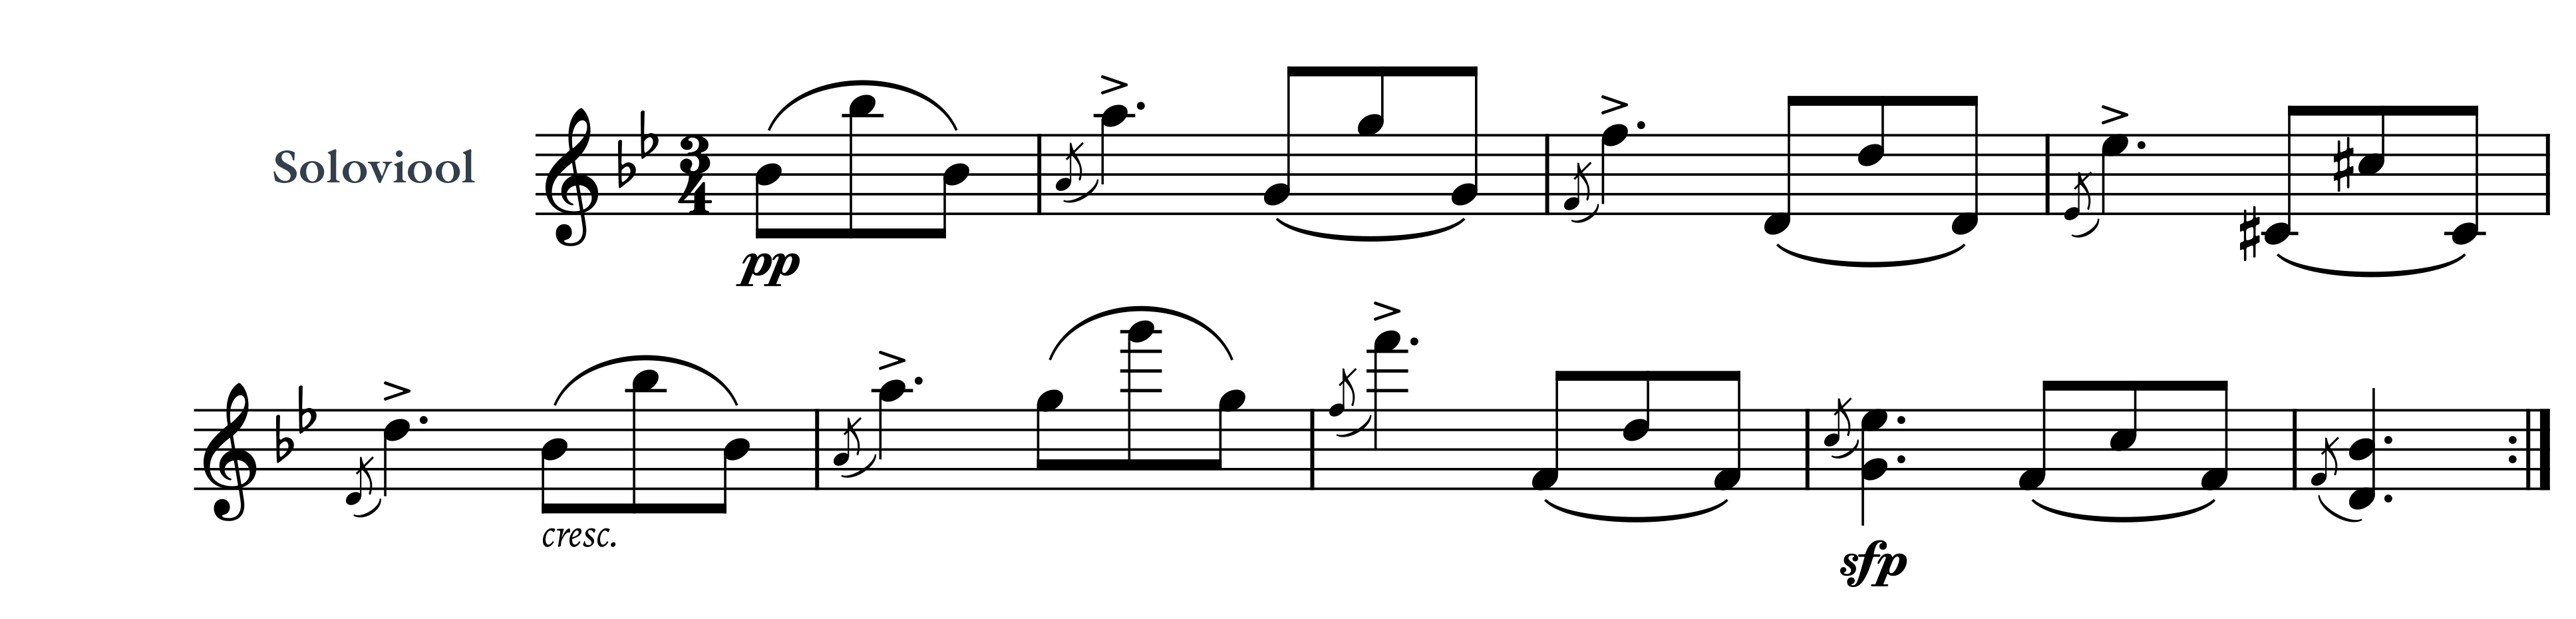 Voorbeeld 3: Typisch Weense ornamentaties in de soloviool